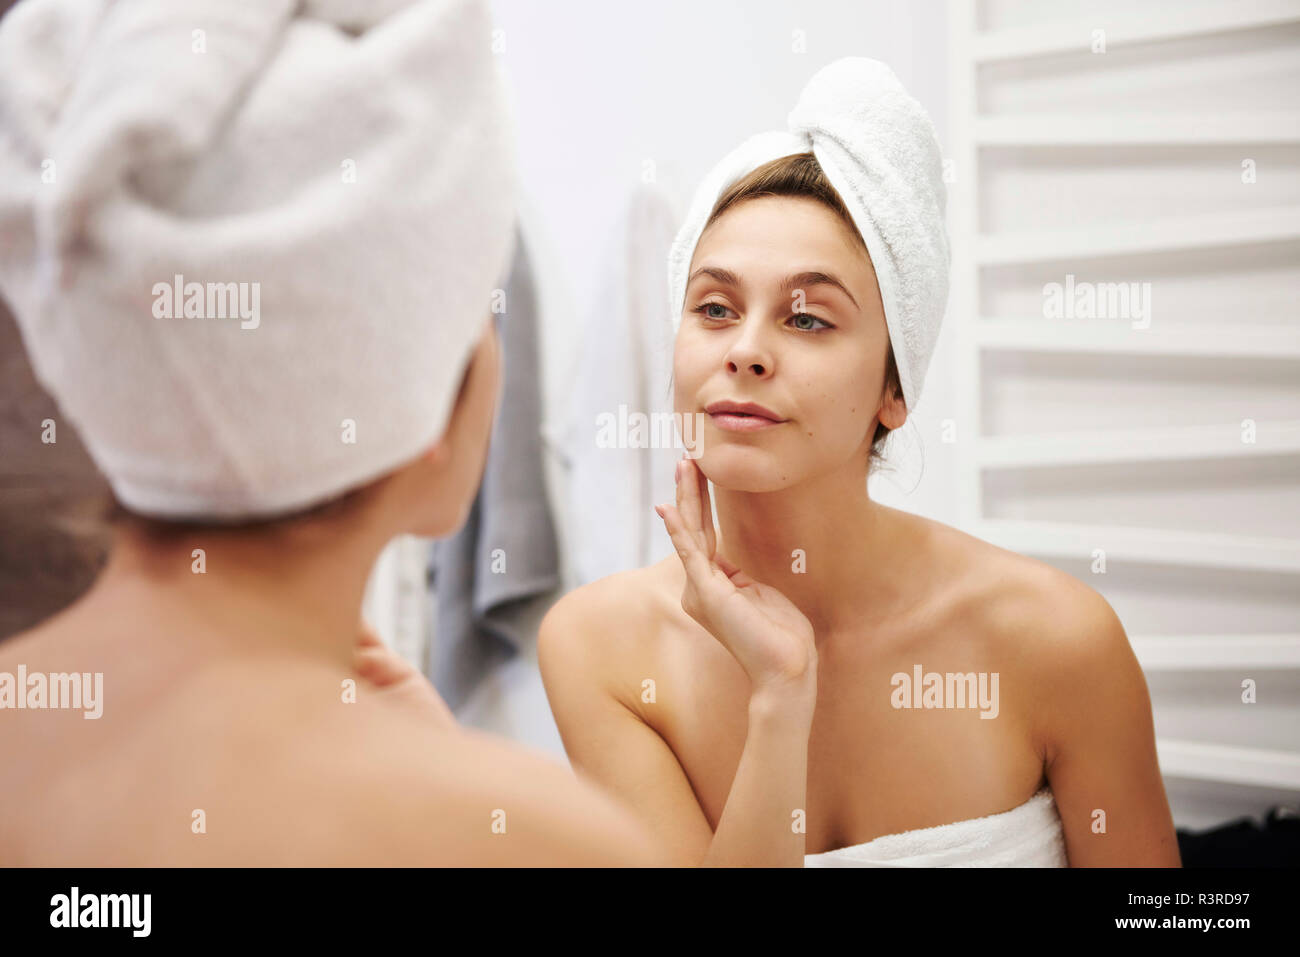 Imagen de espejo de joven examinar su rostro en el baño Foto de stock